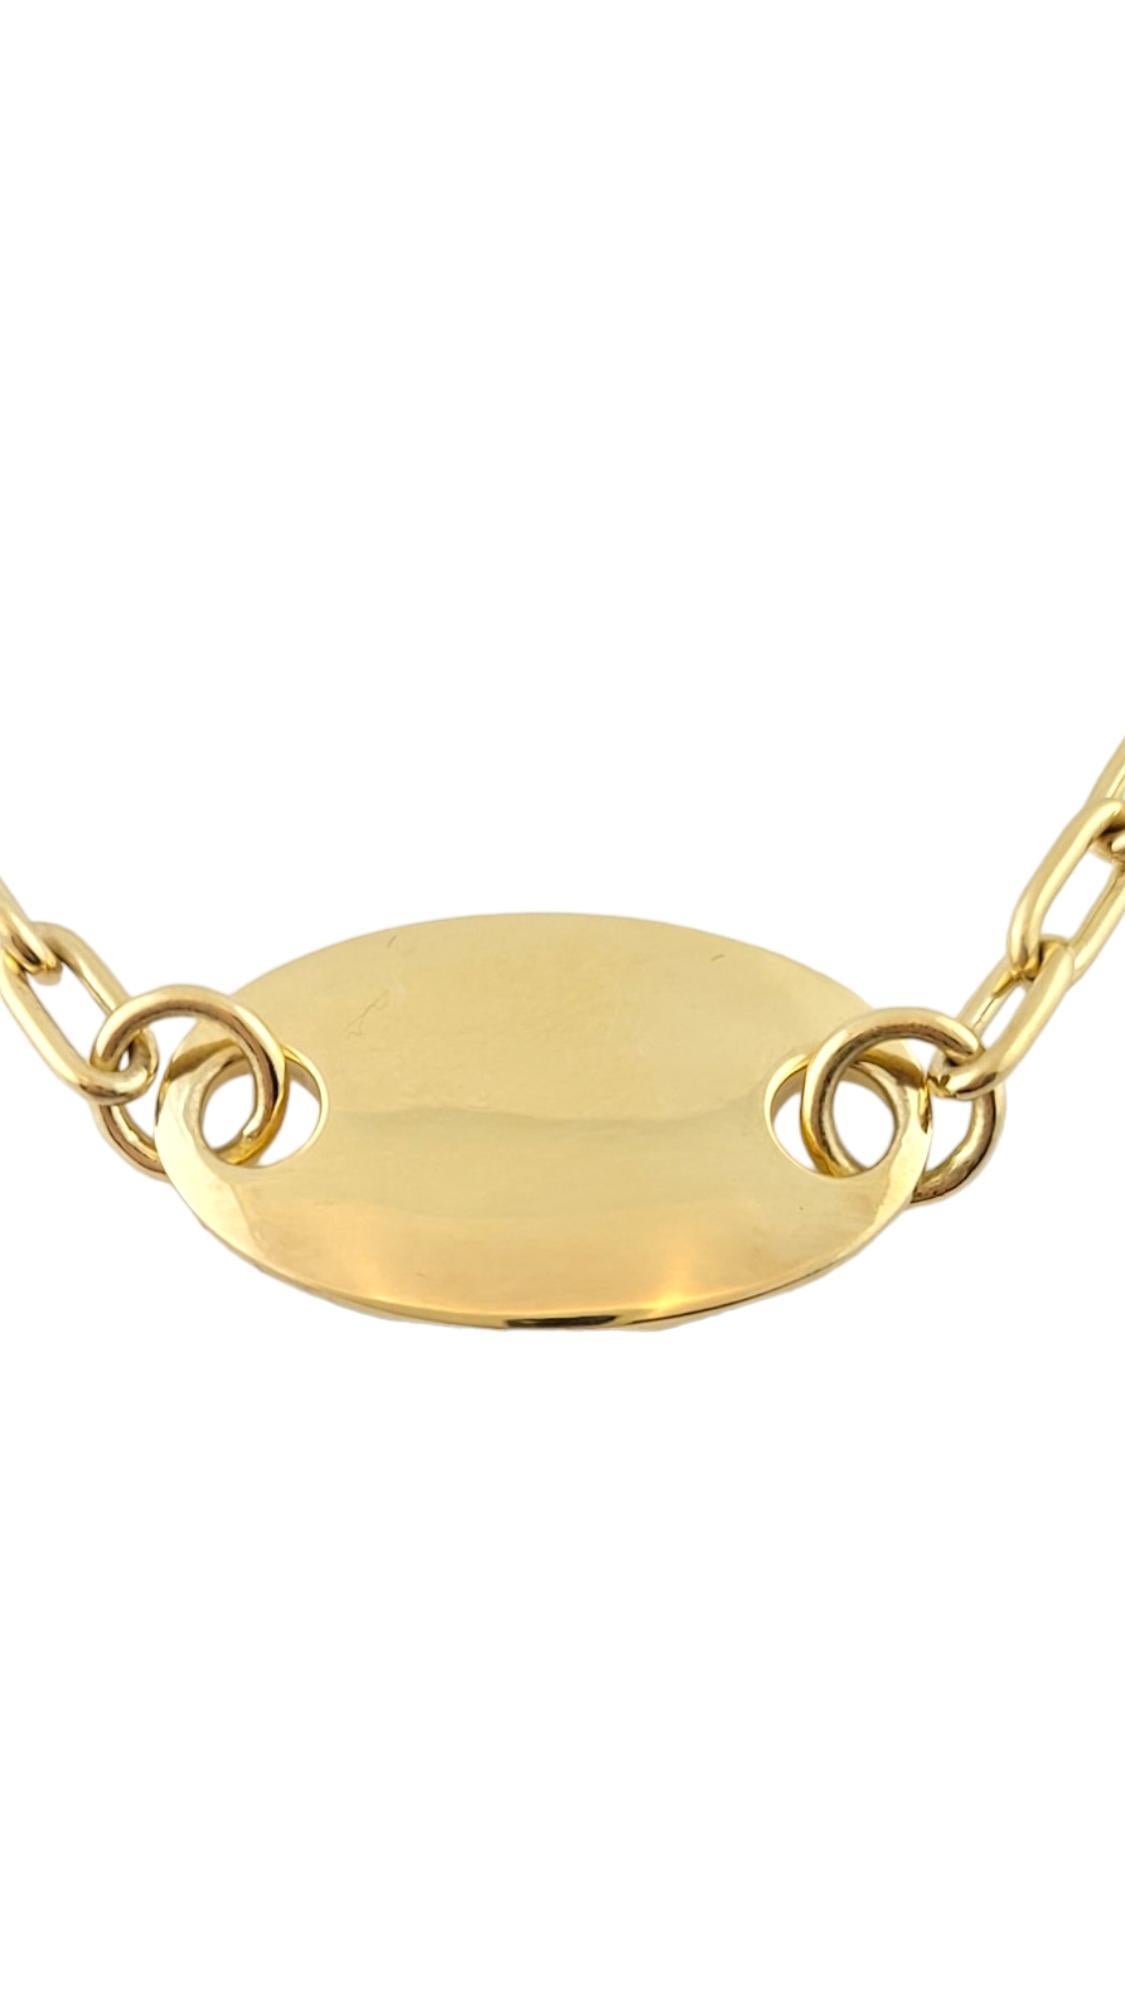 Vintage Collier à maillons en or jaune 18K Pomellato ID Chain

Magnifique collier à chaîne Pomellato en or jaune 18 carats pour une belle finition !

Longueur de la chaîne : 15